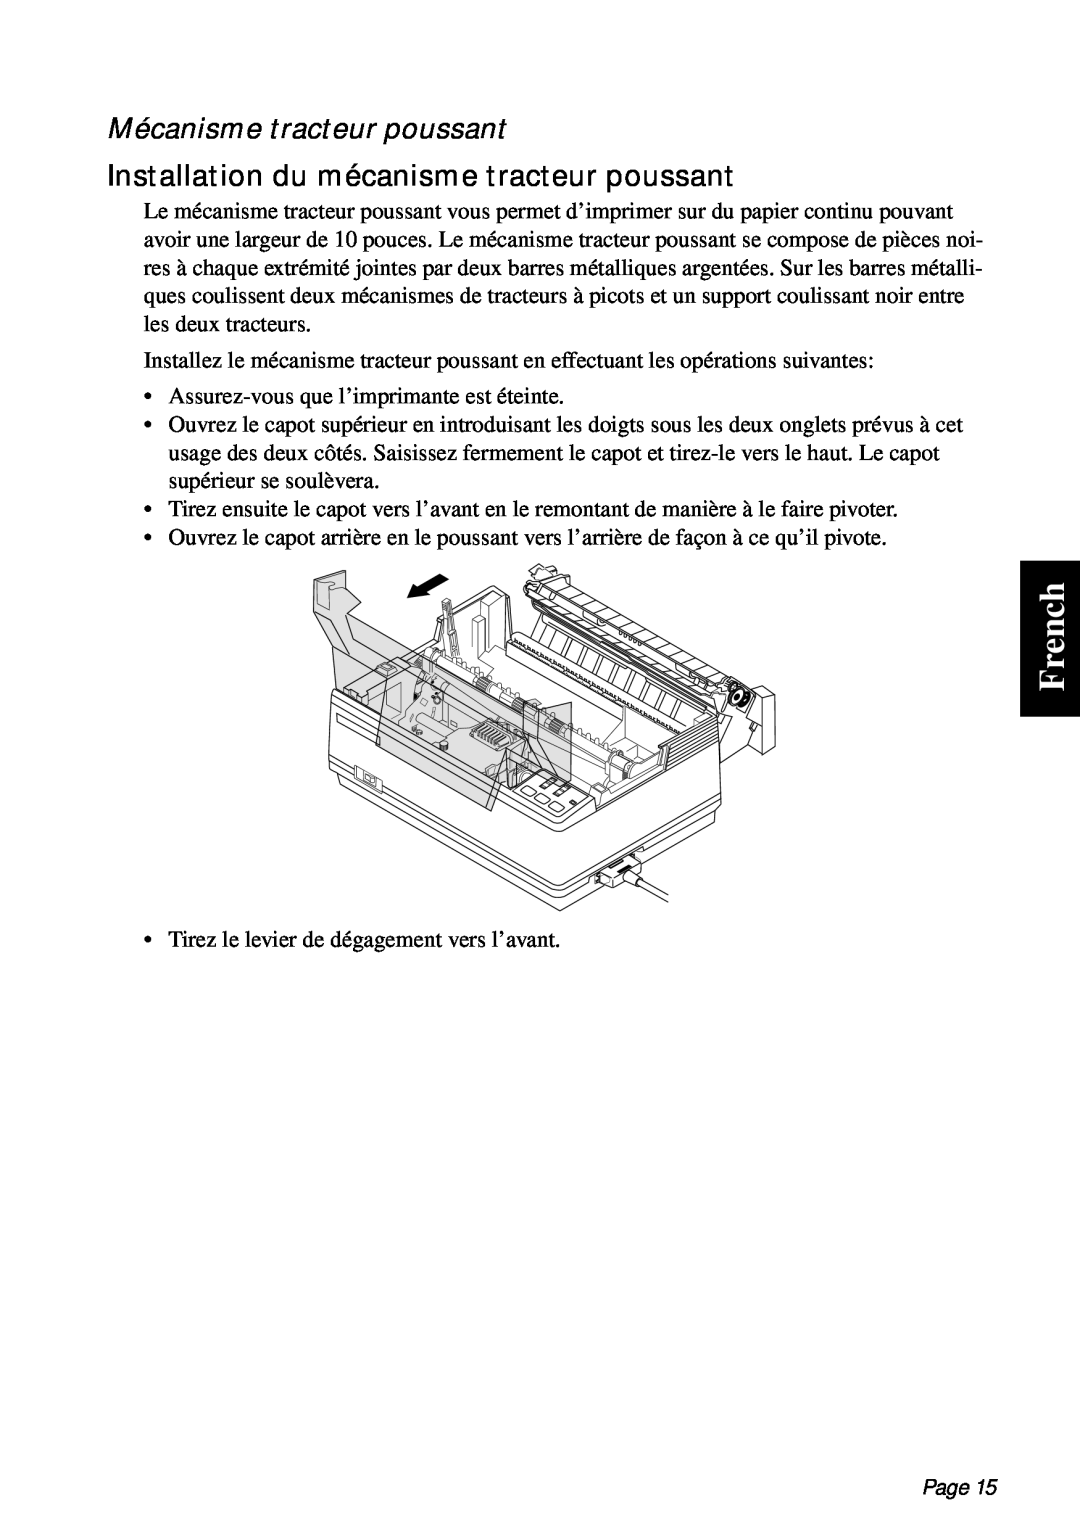 Star Micronics PT-10Q user manual French, Mécanisme tracteur poussant, Installation du mécanisme tracteur poussant, Page 